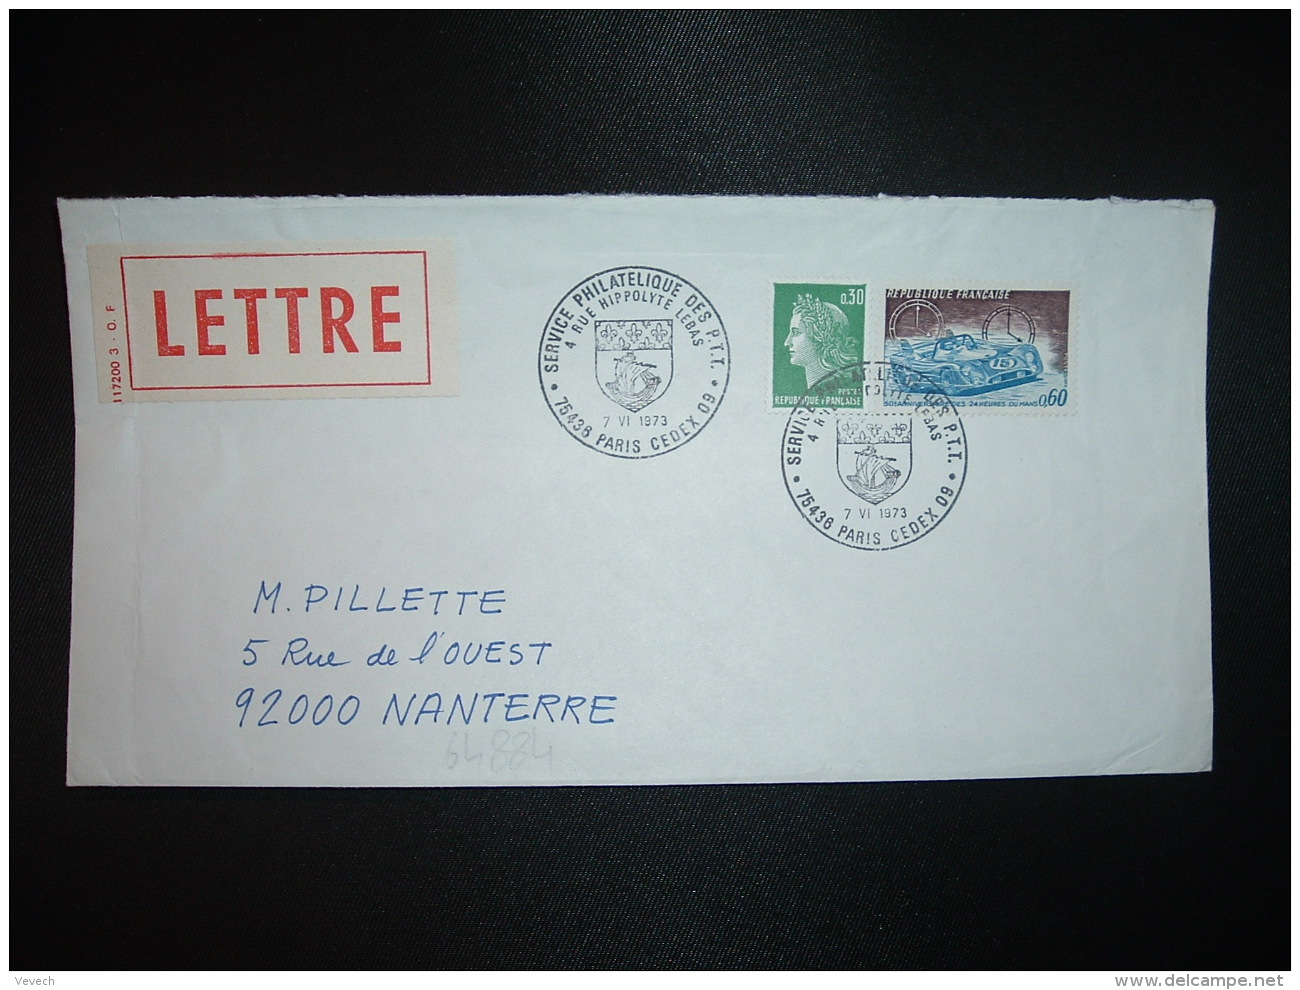 LETTRE TP 24 HEURES DU MANS 0,60 + M. DE CHEFFER 0,30 OBL.7 VI 1973 PARIS CEDEX 09 SERVICE PHILATELIQUE DES PTT - Posttarife